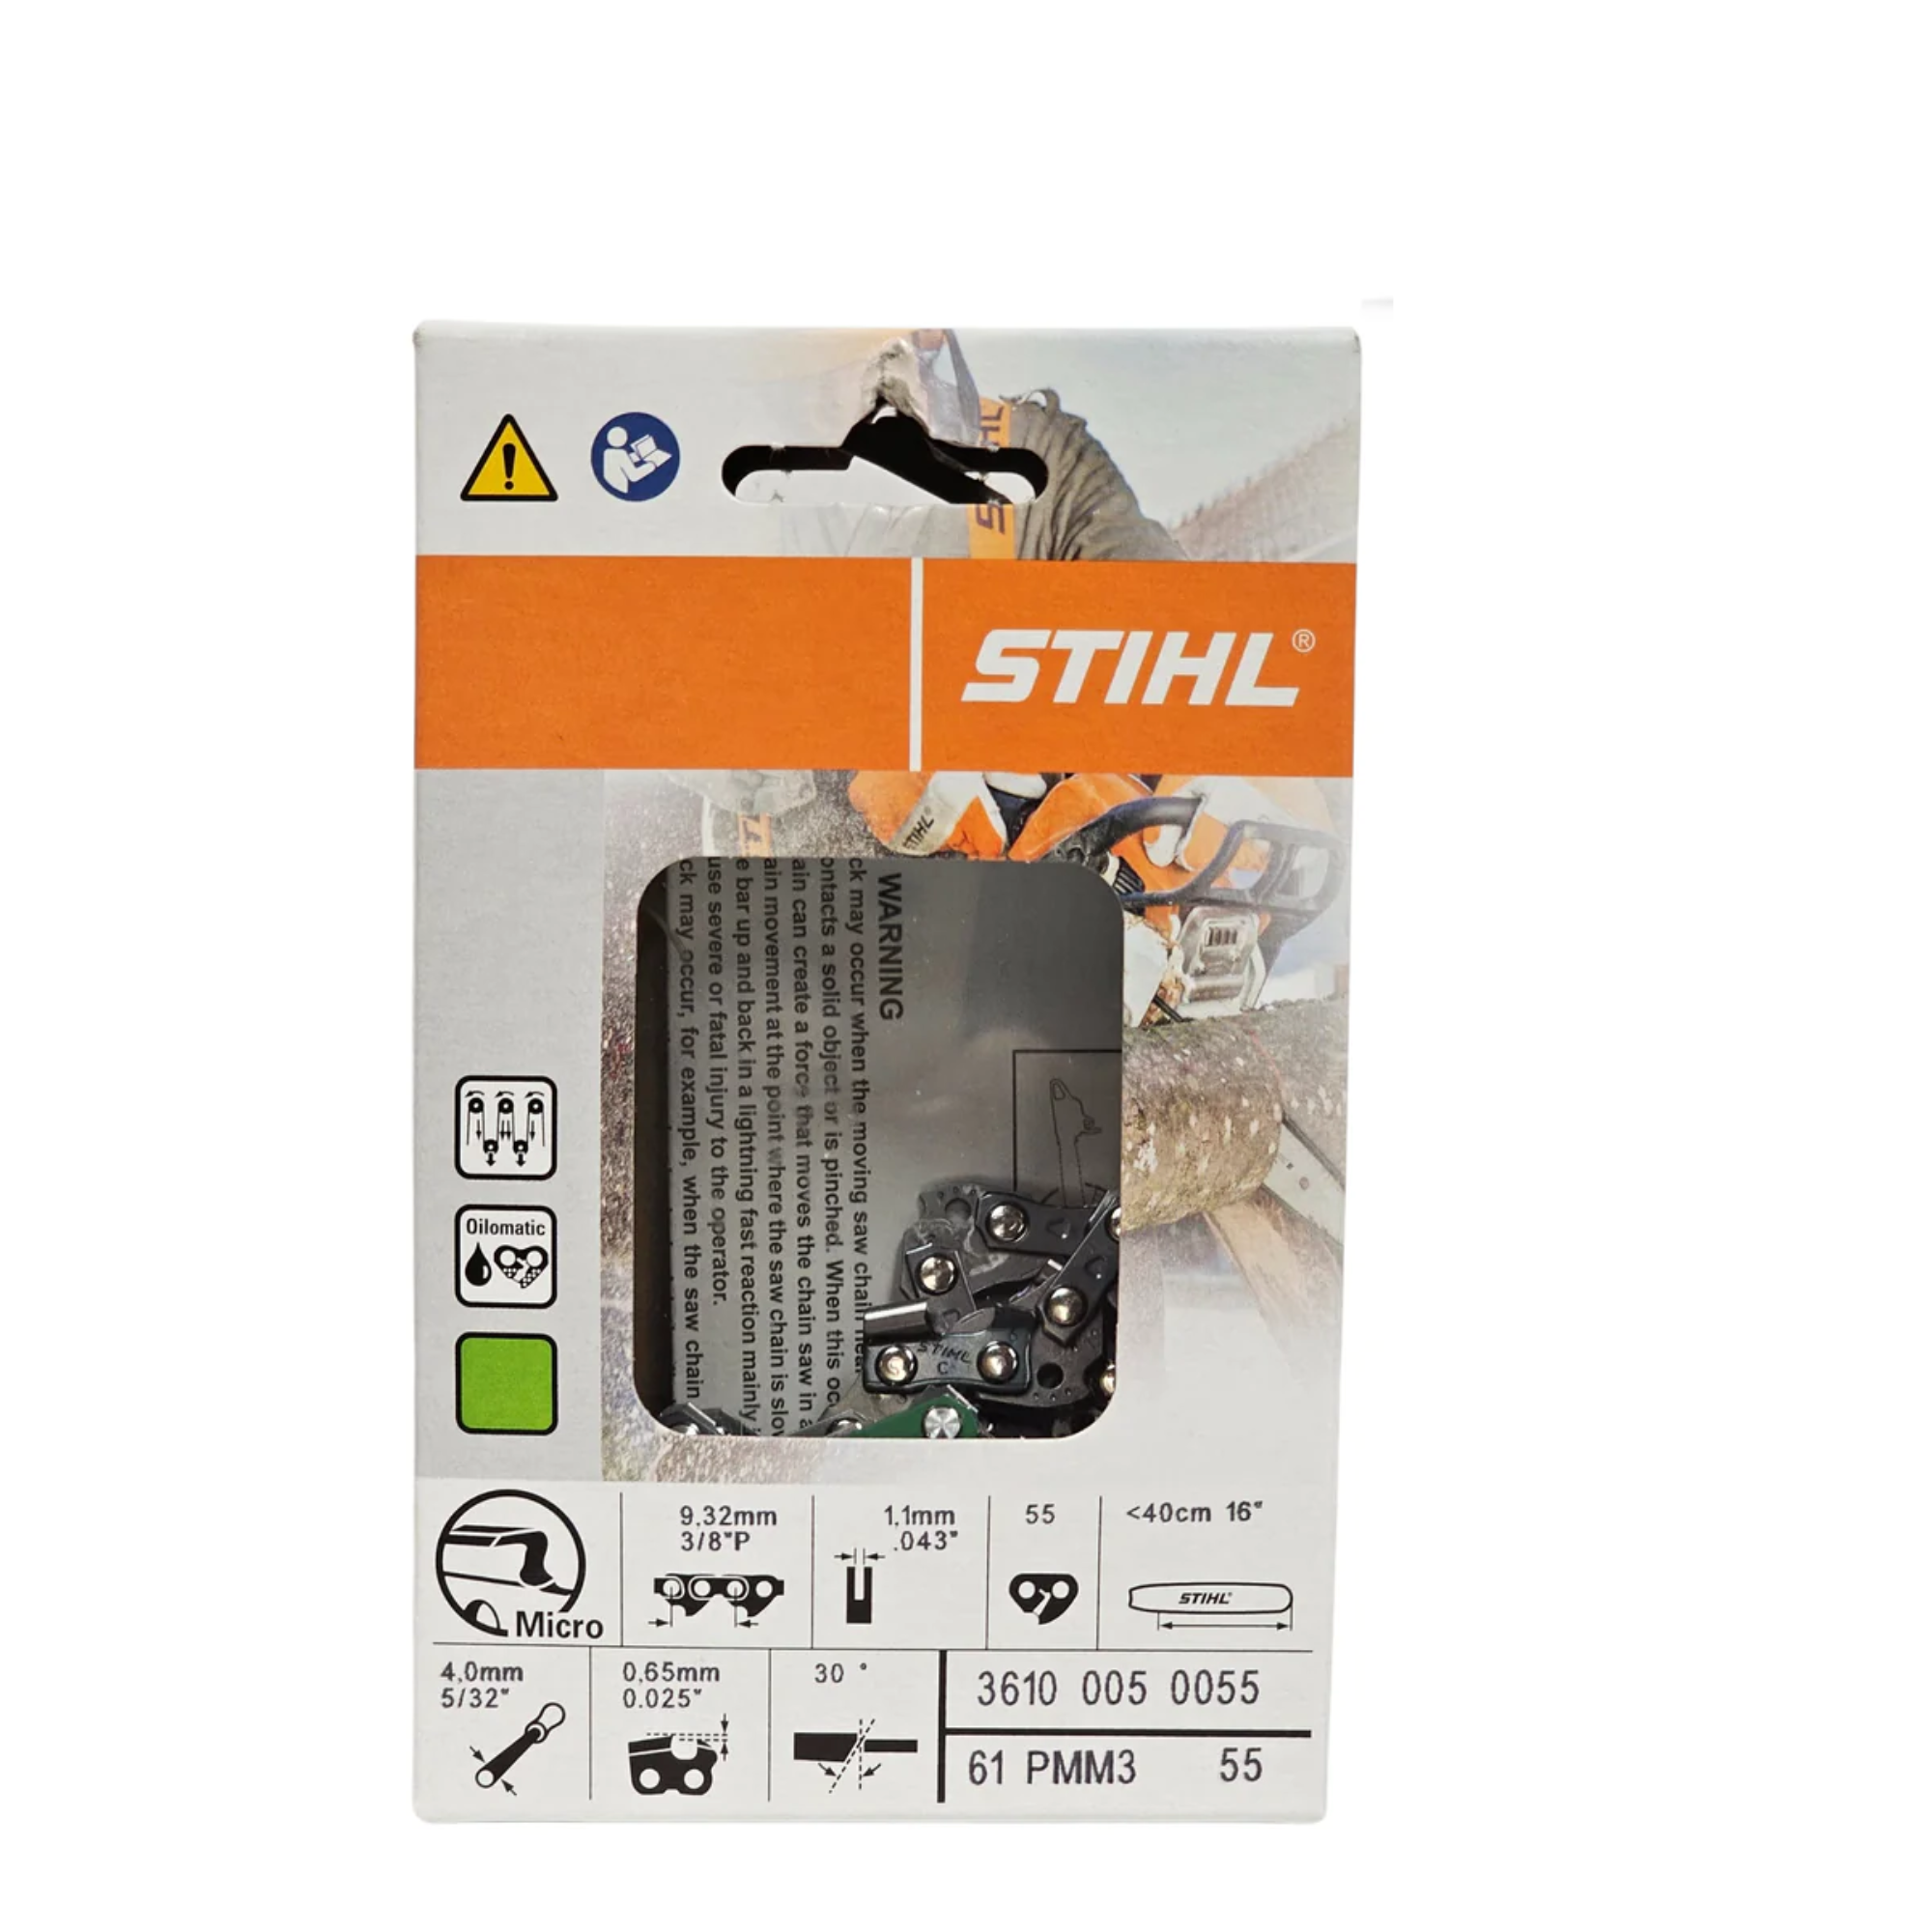 Stihl Oilomatic Picco Micro Mini 3 | 61 PMM3 55 | 16 in. | 55 Drive Links | Chainsaw Chain | 3610 005 0055